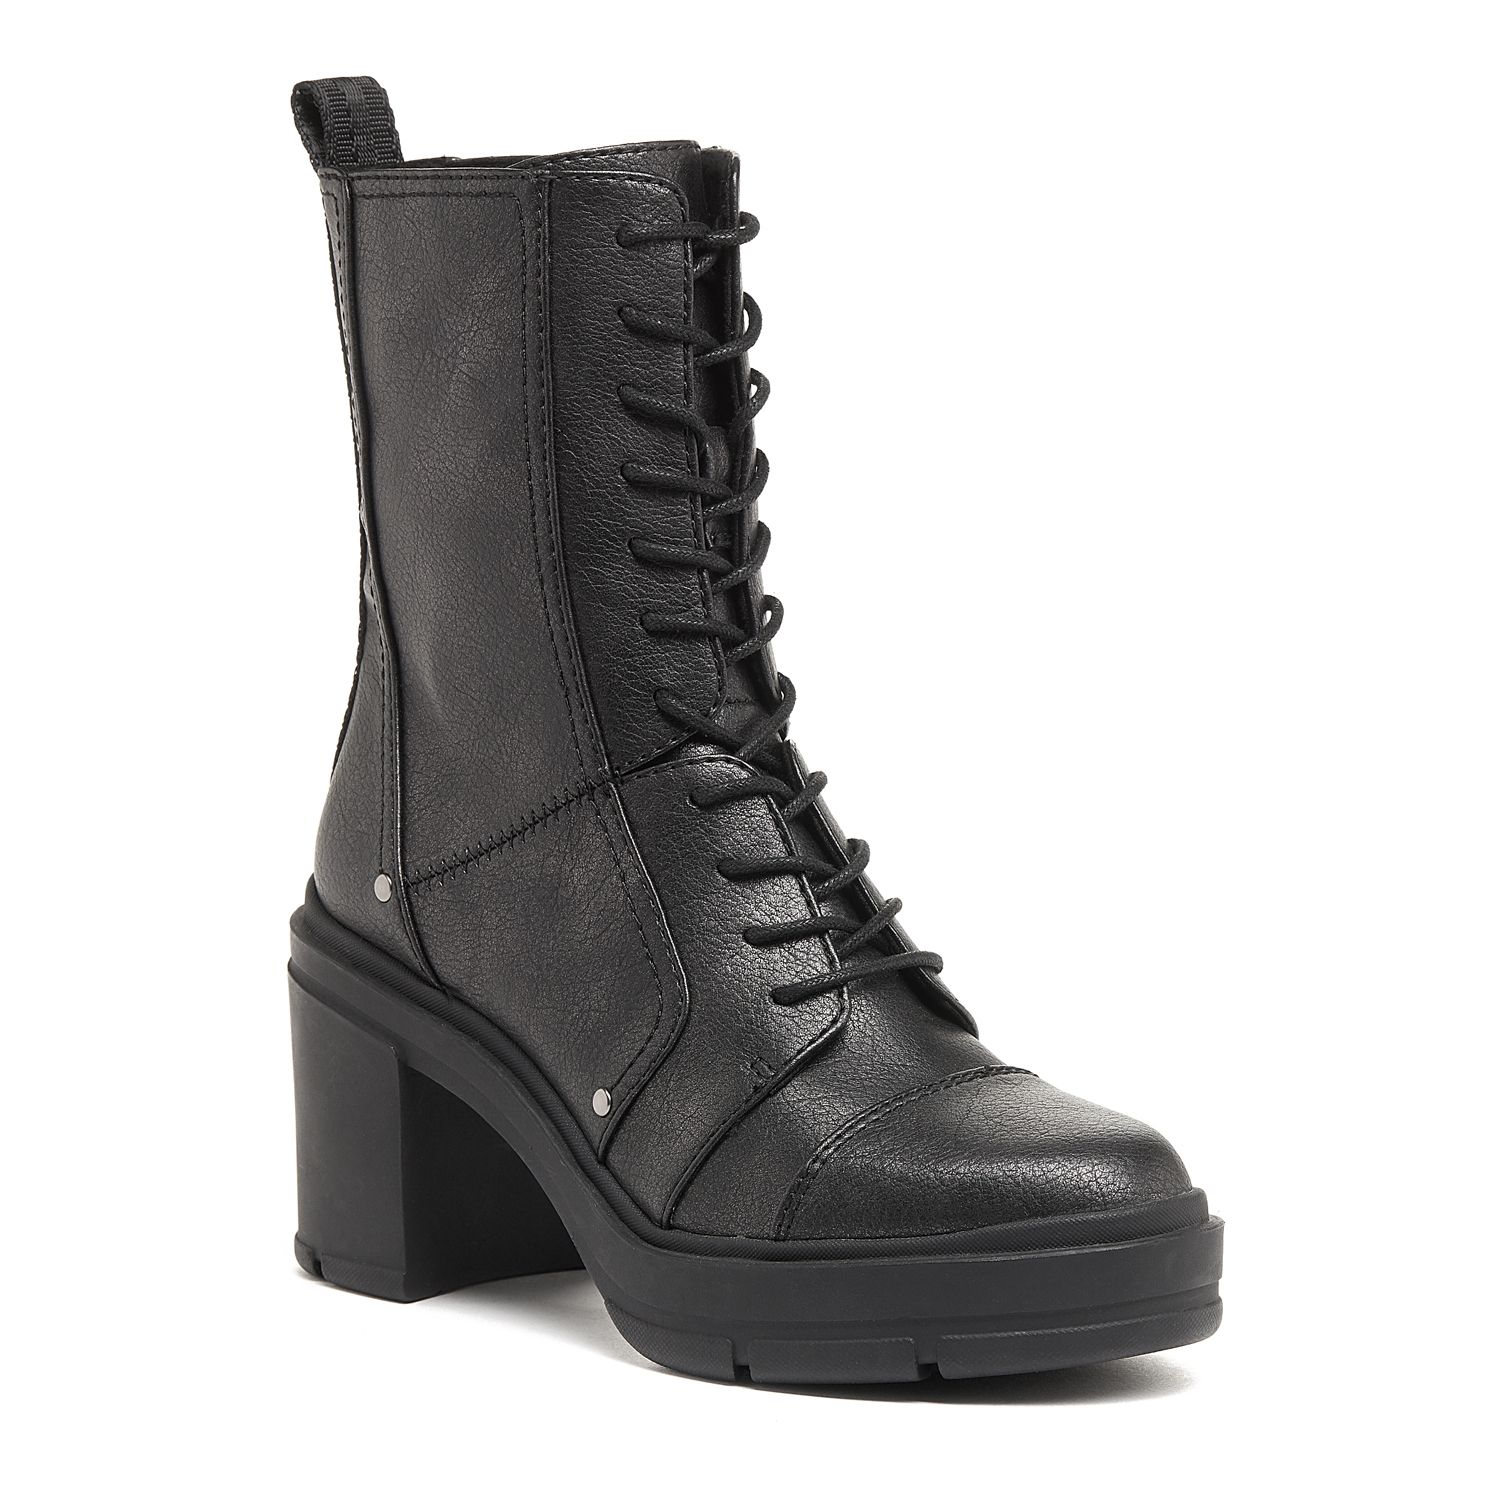 black heel combat boots